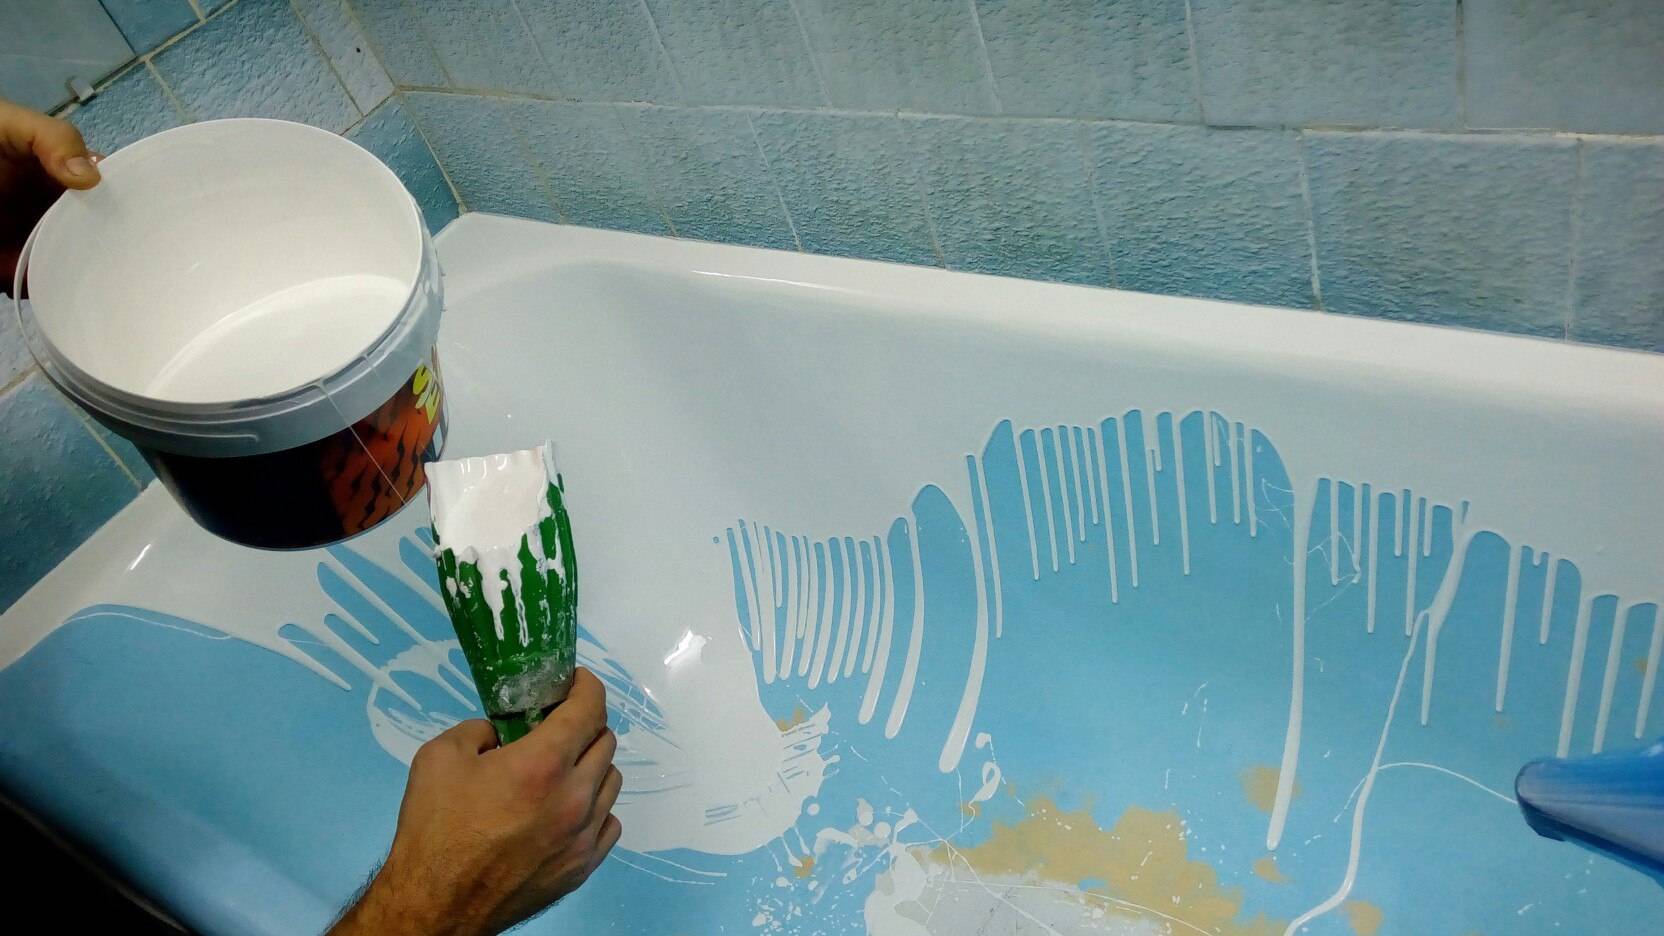 Как заделать скол эмали ванны – варианты выполнения ремонта